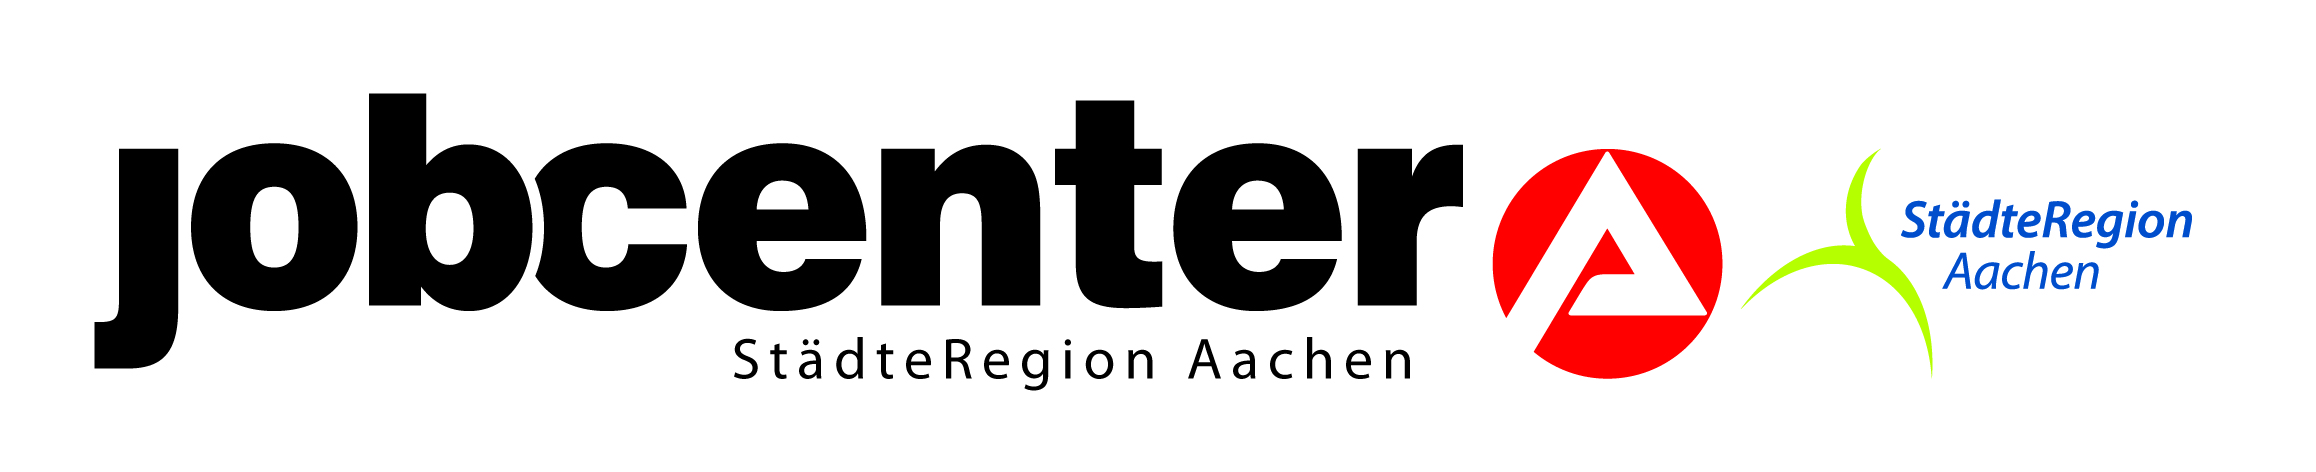 Jobcenter Aachen Logo - Referenz Sievert Coaching